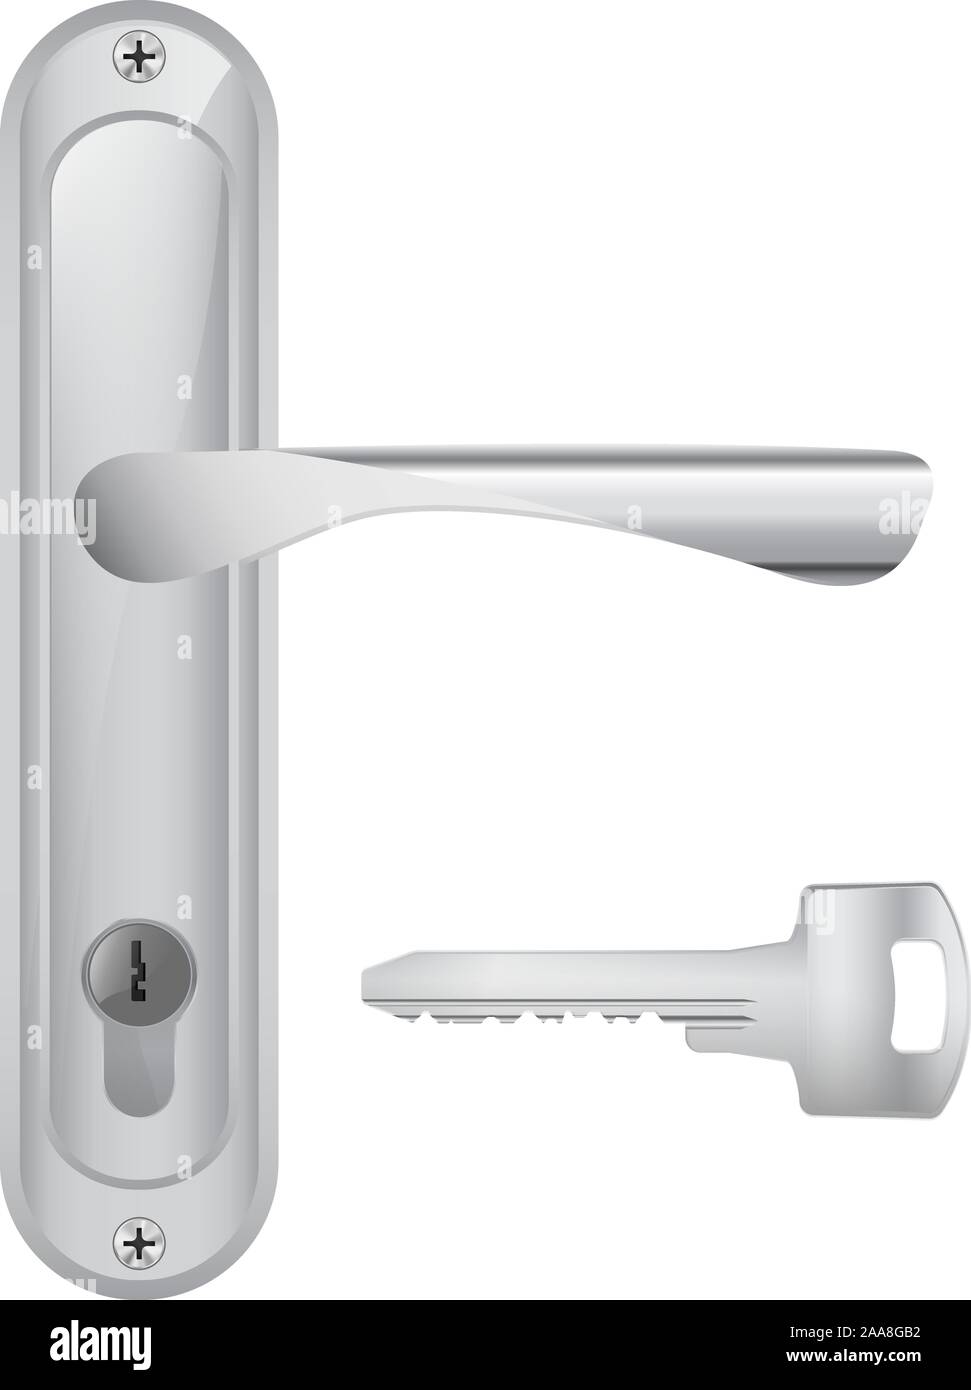 Door handle and a key Stock Vector